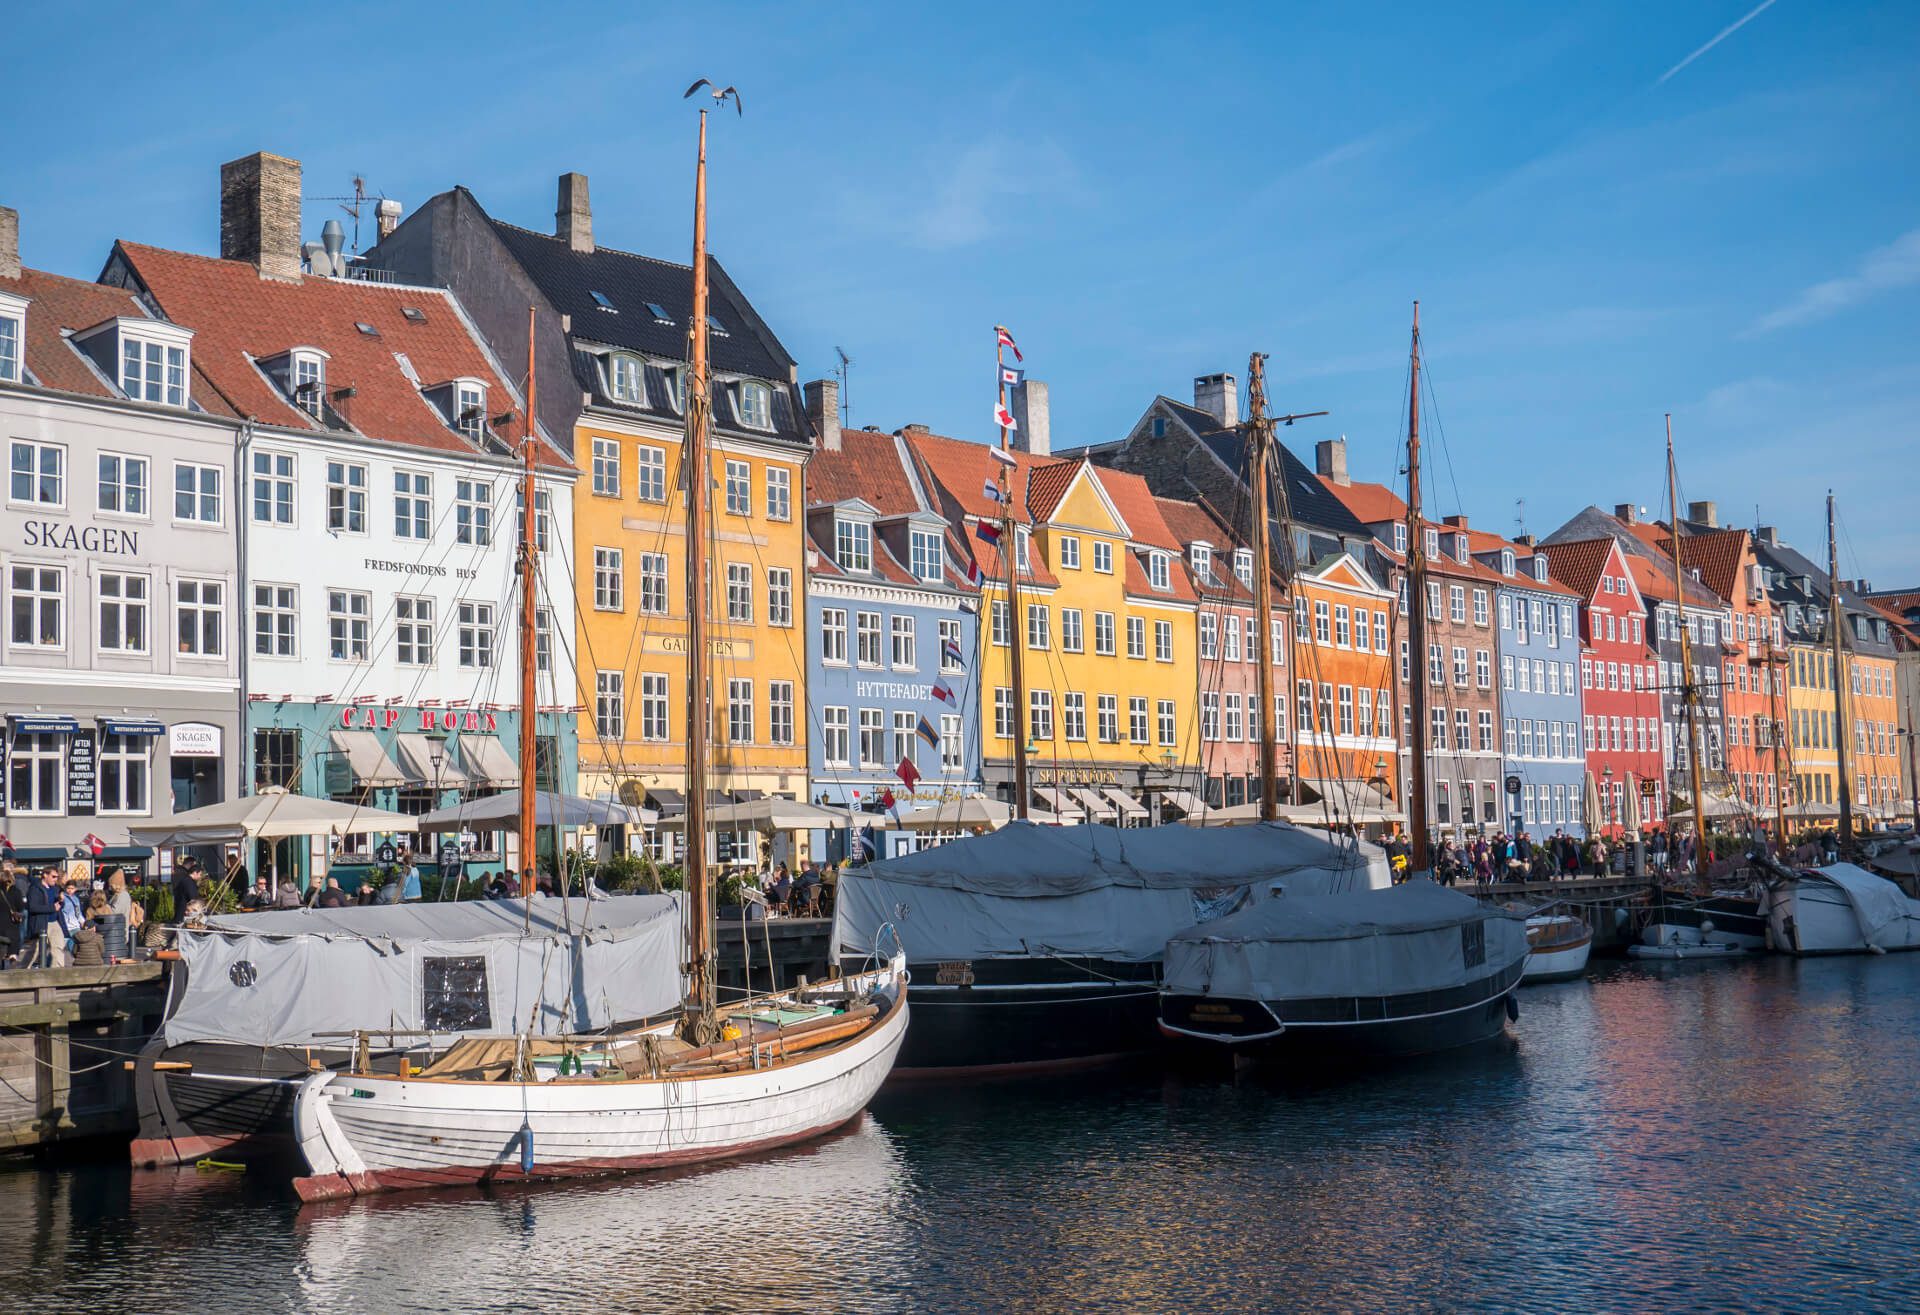 Statki zacumowane przez kanale Nyhavn